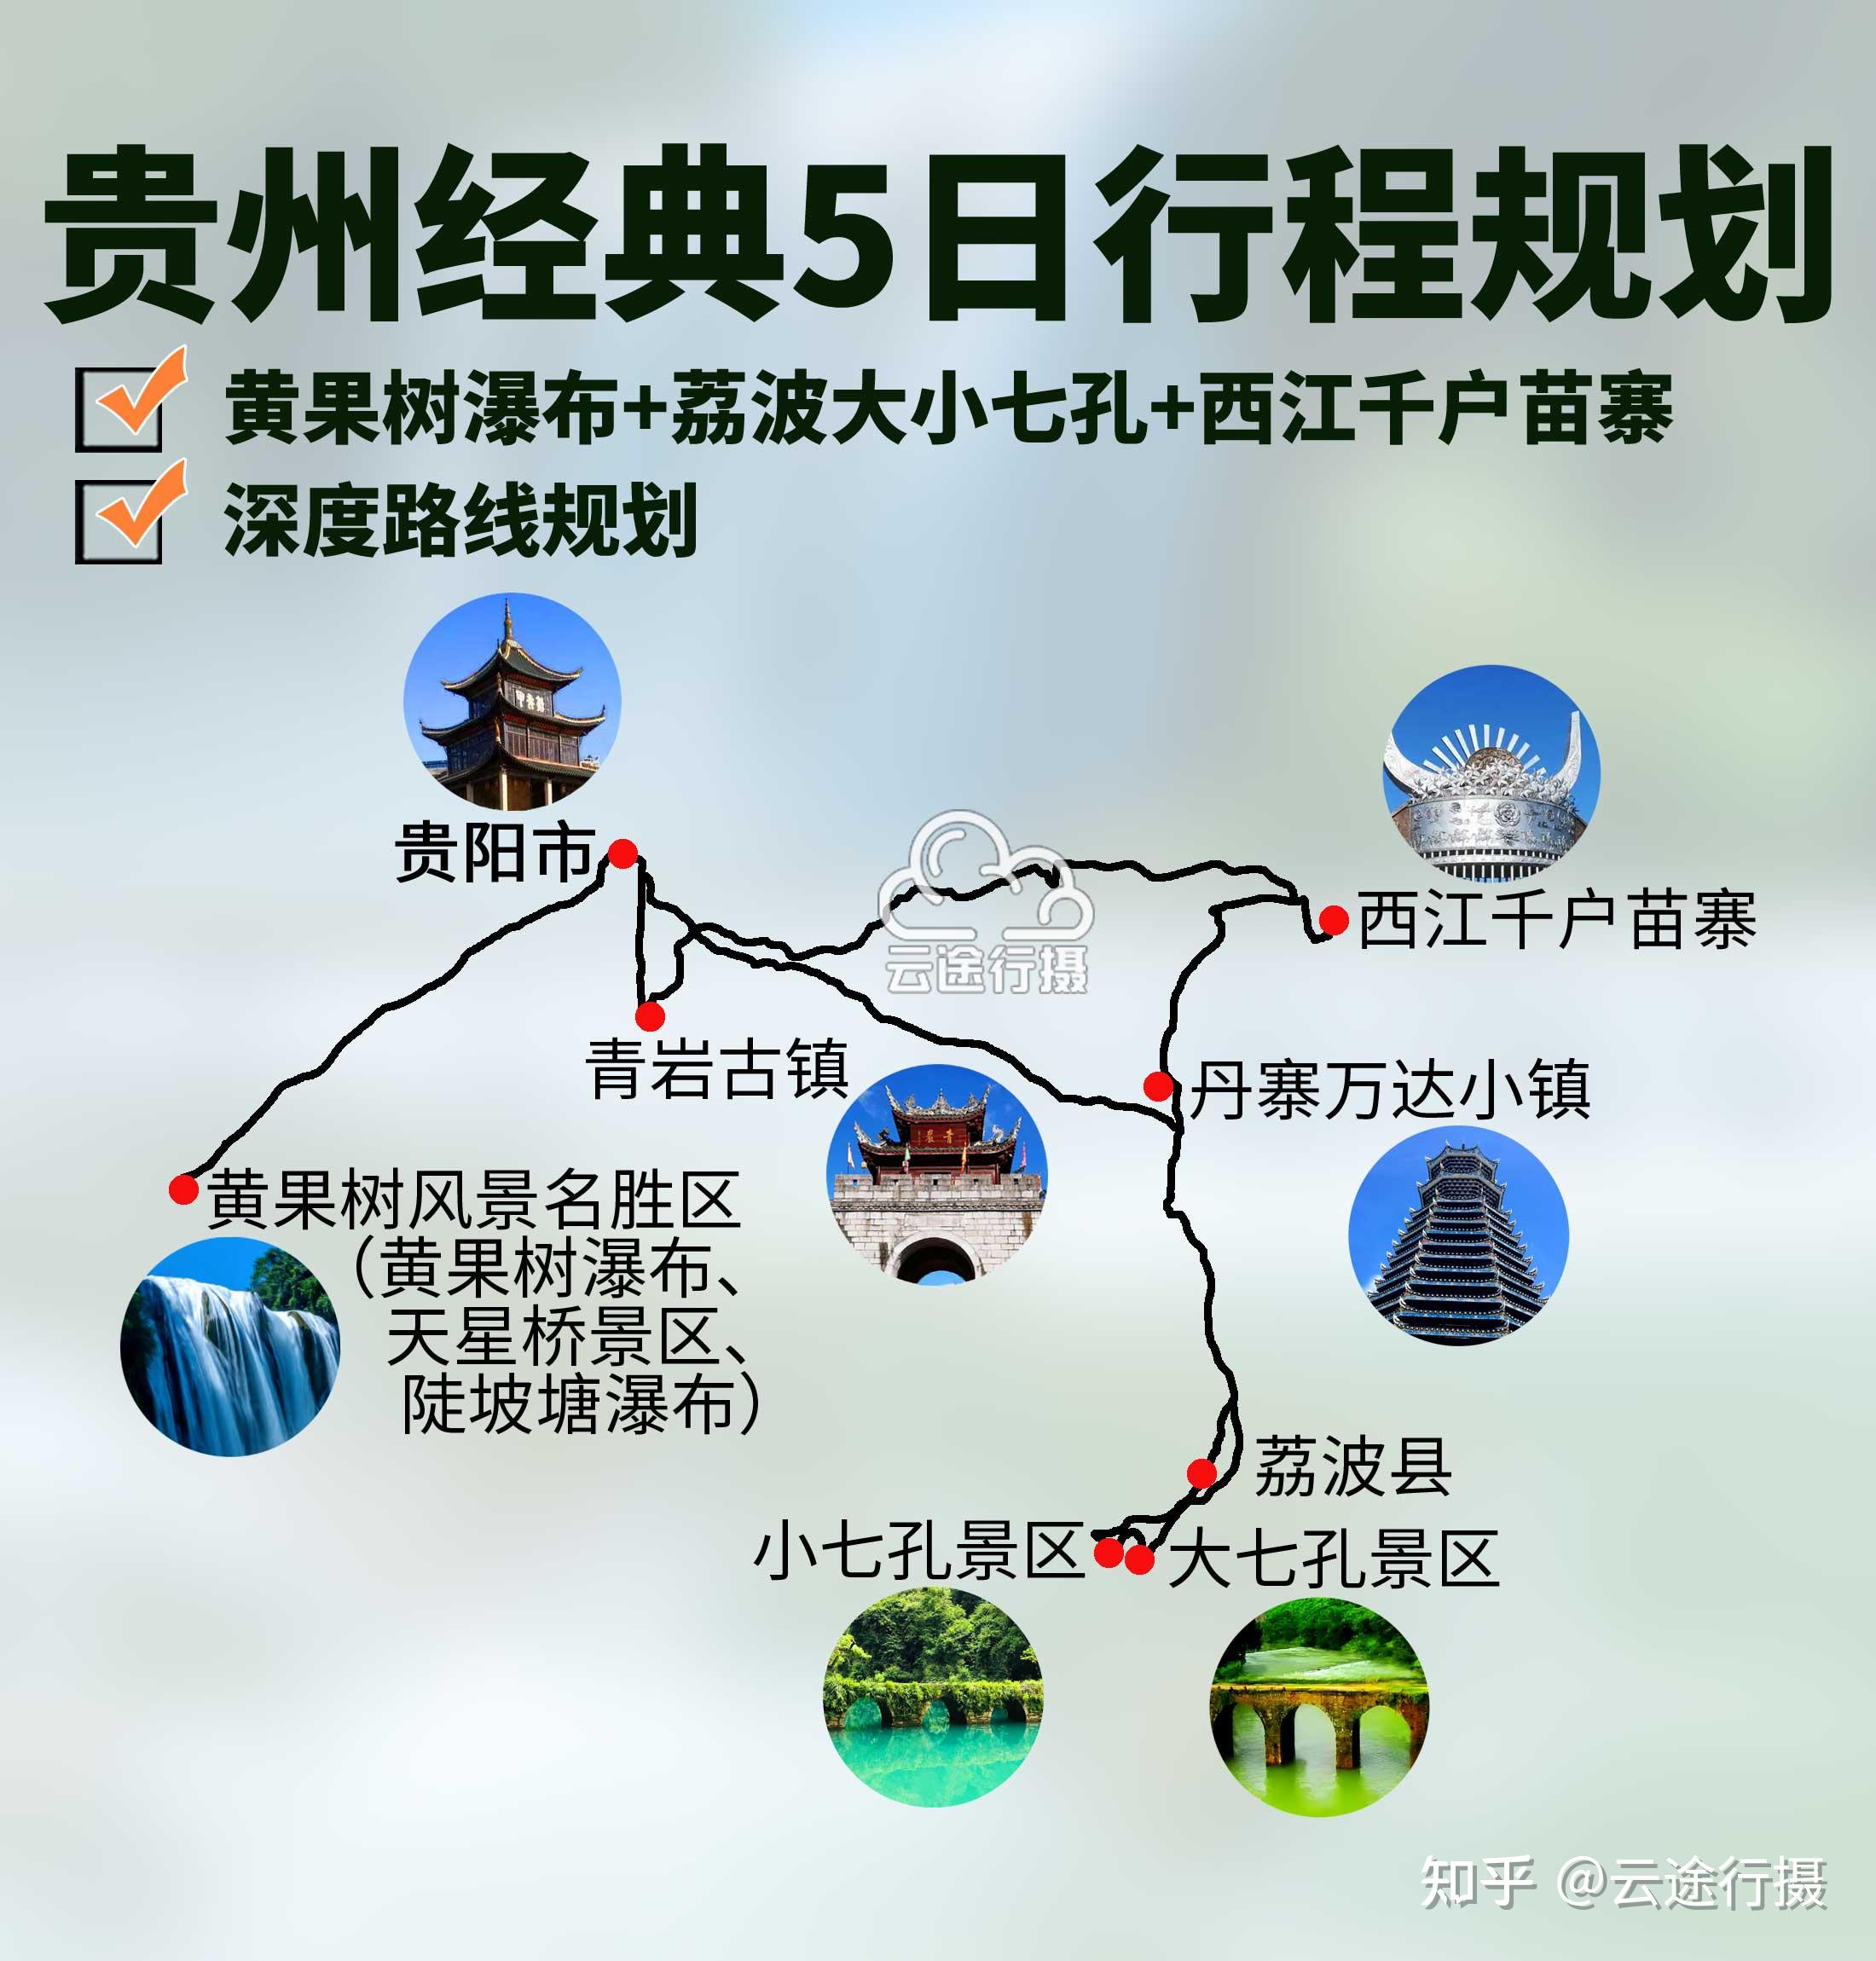 丹寨万达小镇等多个特色景区,包含贵州包车定制游行程规划及旅游路线